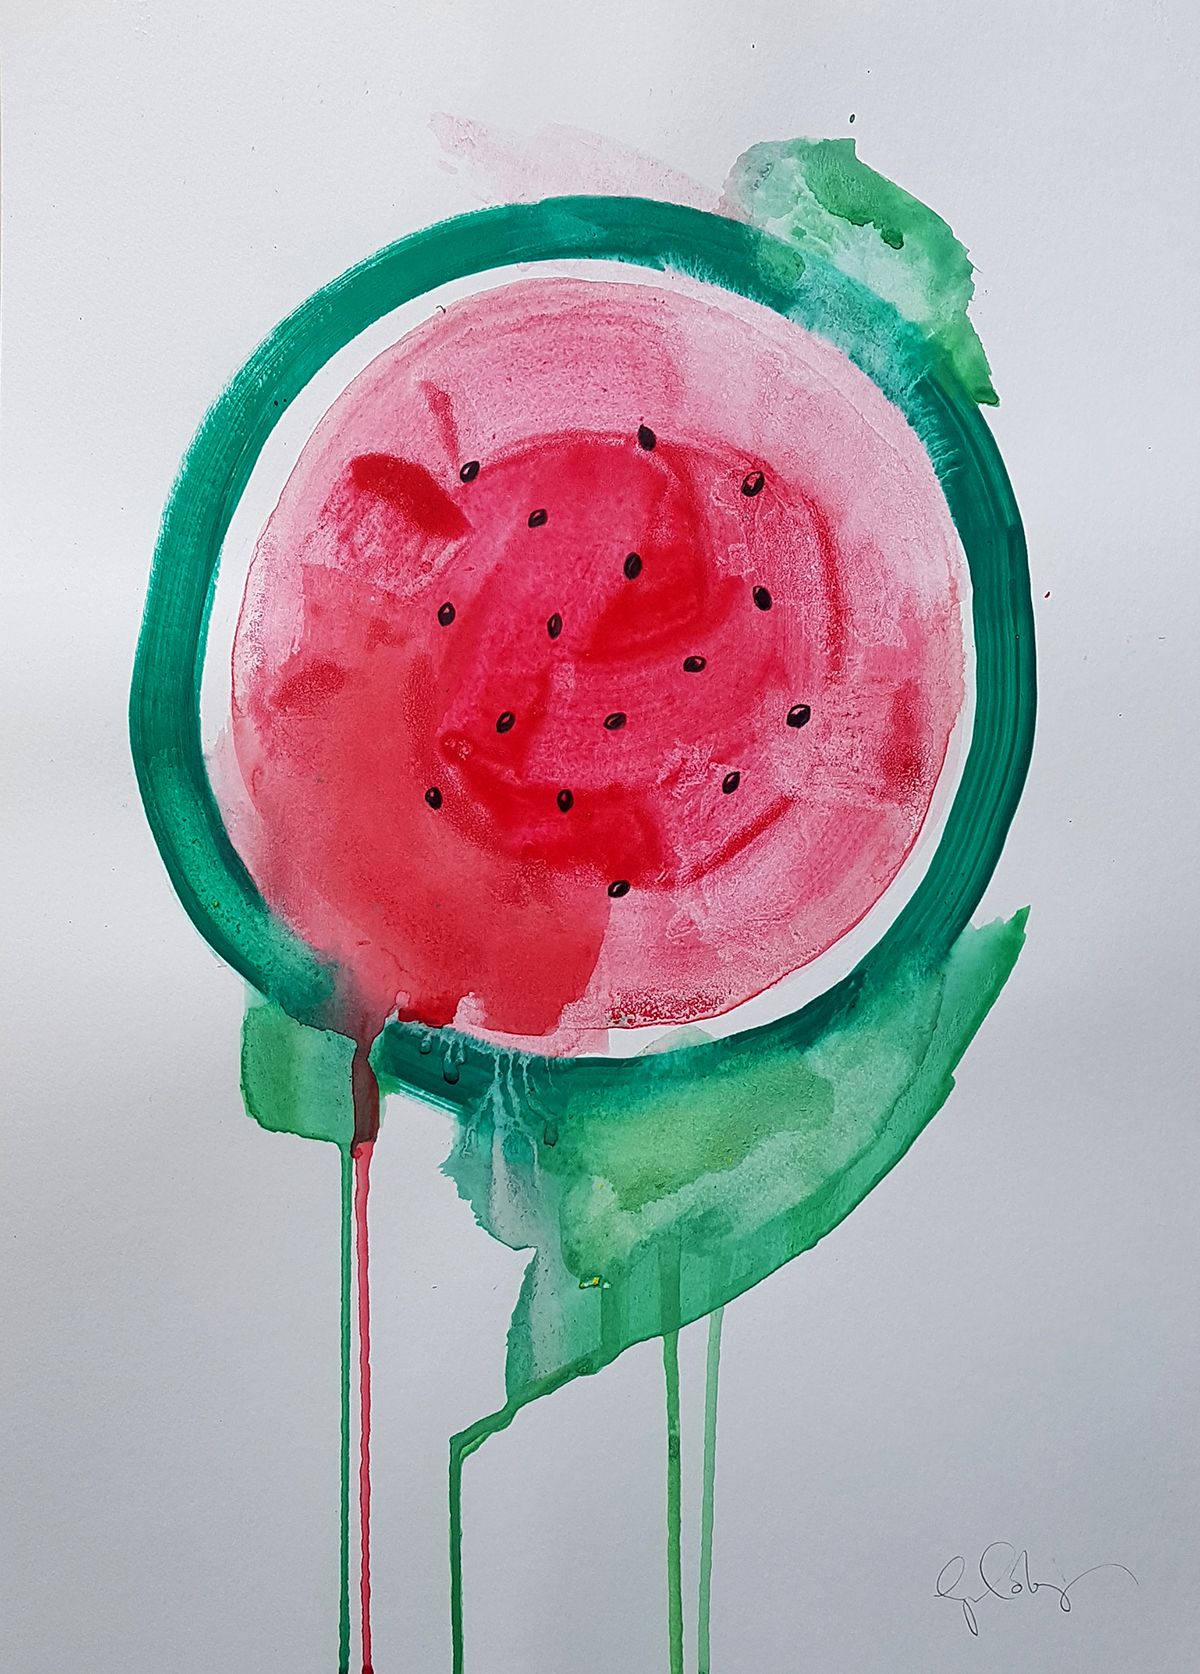 Watermelon by Gavin Dobson